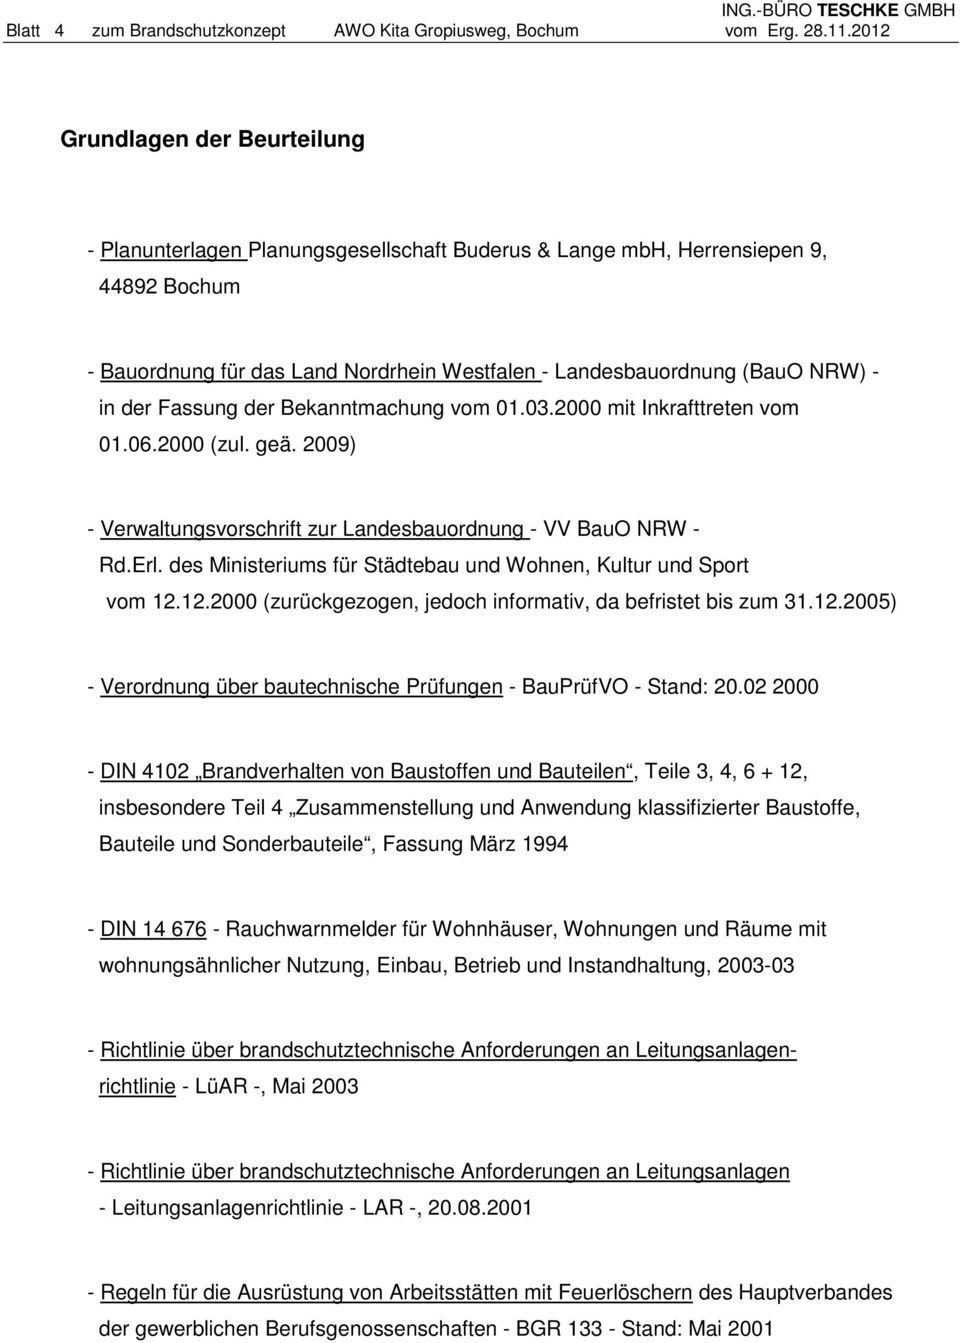 in der Fassung der Bekanntmachung vom 01.03.2000 mit Inkrafttreten vom 01.06.2000 (zul. geä. 2009) - Verwaltungsvorschrift zur Landesbauordnung - VV BauO NRW - Rd.Erl.